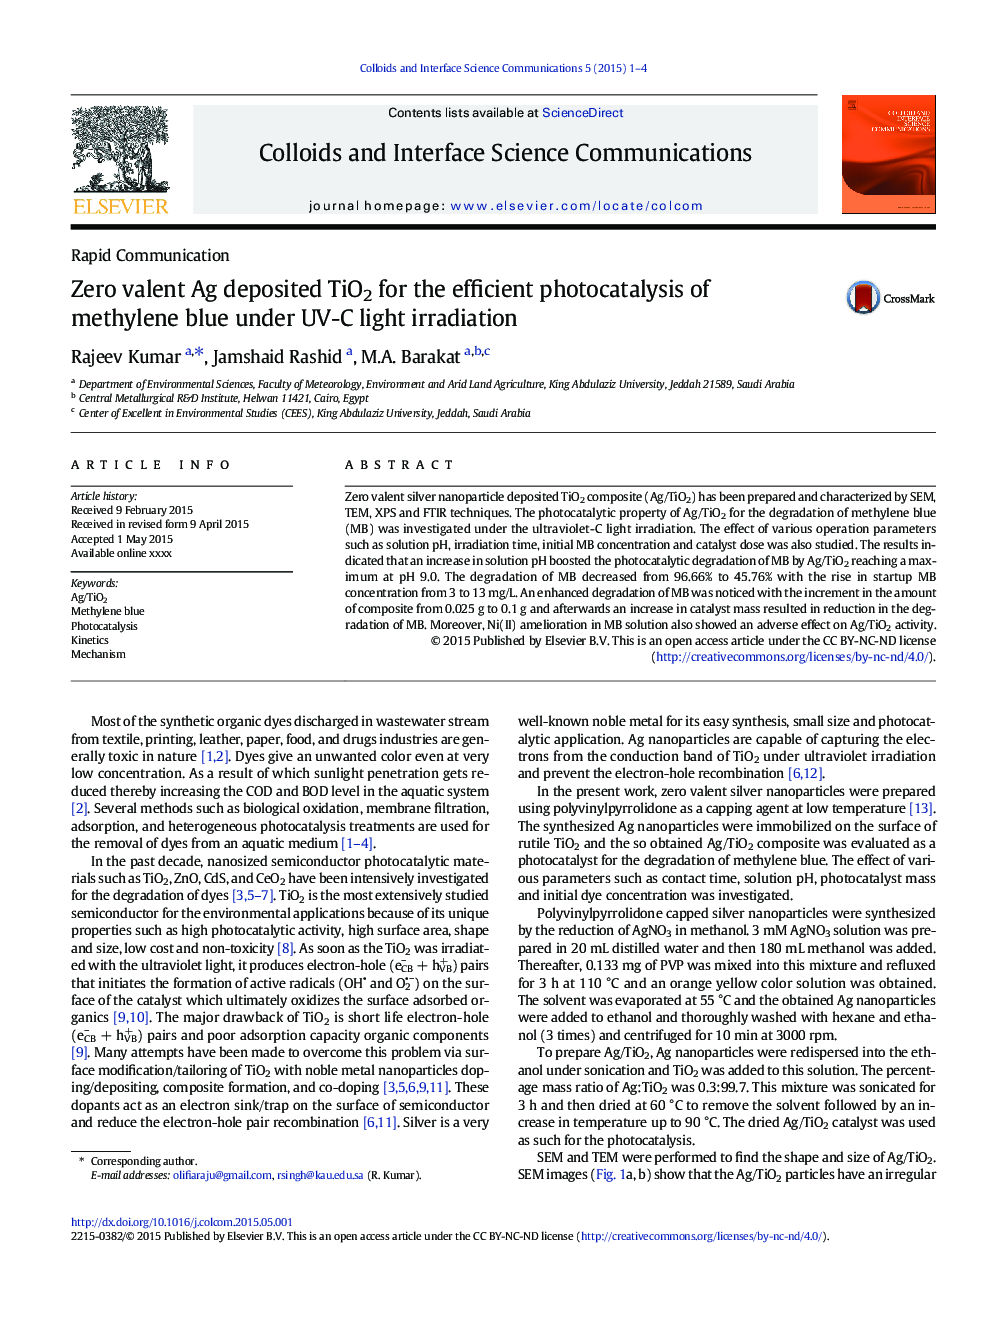 Zero valent Ag deposited TiO2 for the efficient photocatalysis of methylene blue under UV-C light irradiation